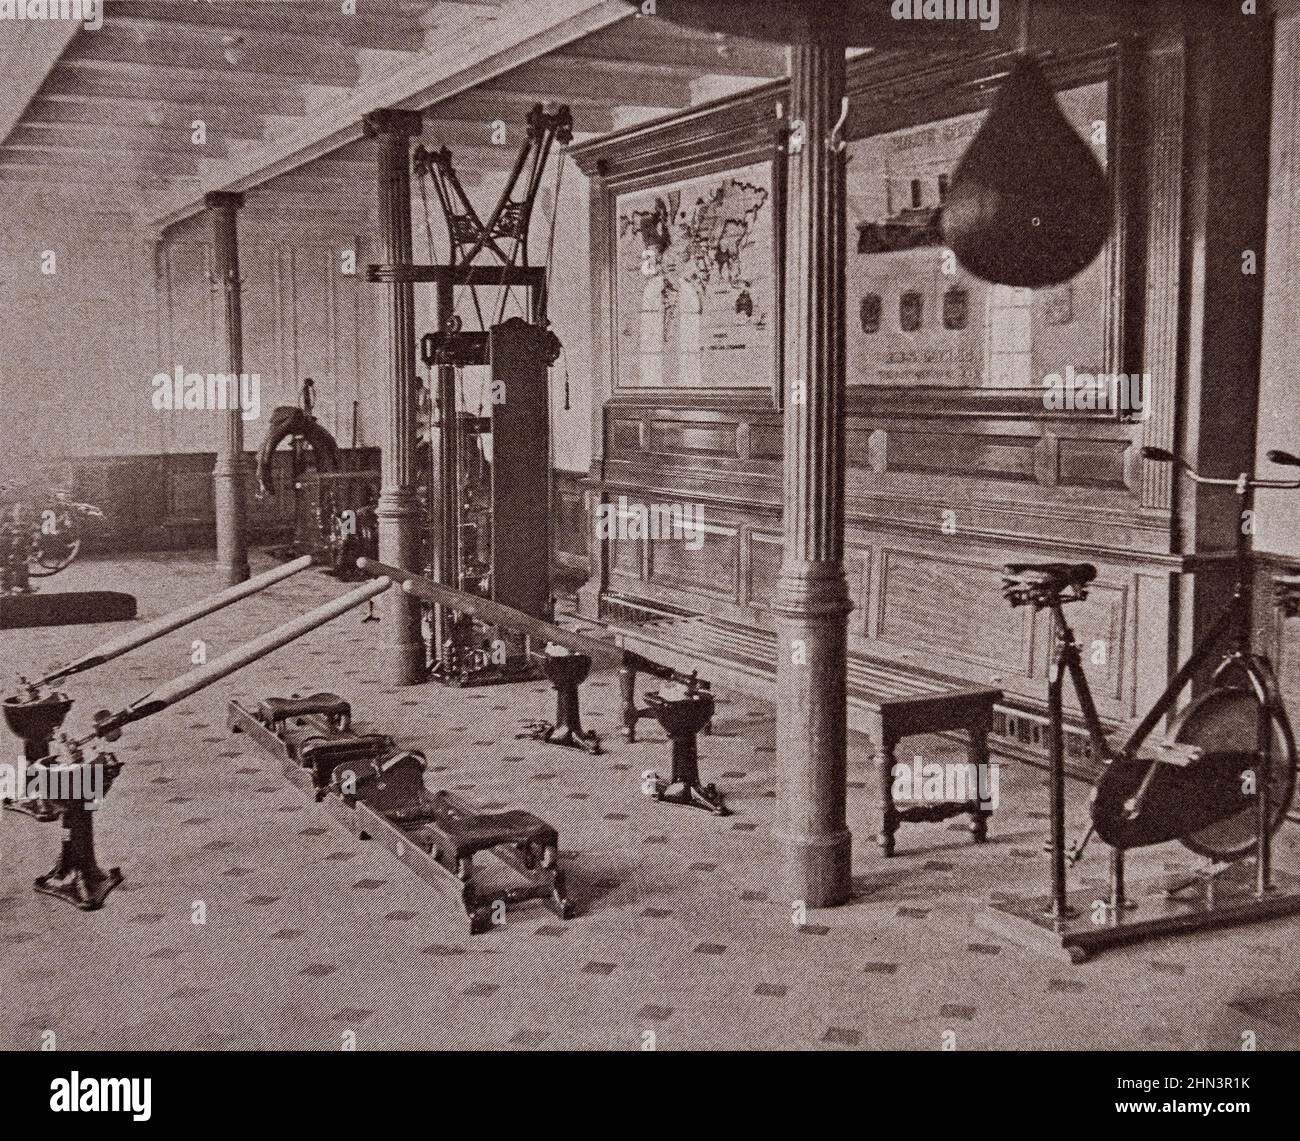 Photo vintage de l'intérieur du Titanic Liner: La salle de gym et les exercices physiques. 1912 pourrait remarquer, sur le plancher, le simulateur de bateau avec ses aures de printemps Banque D'Images